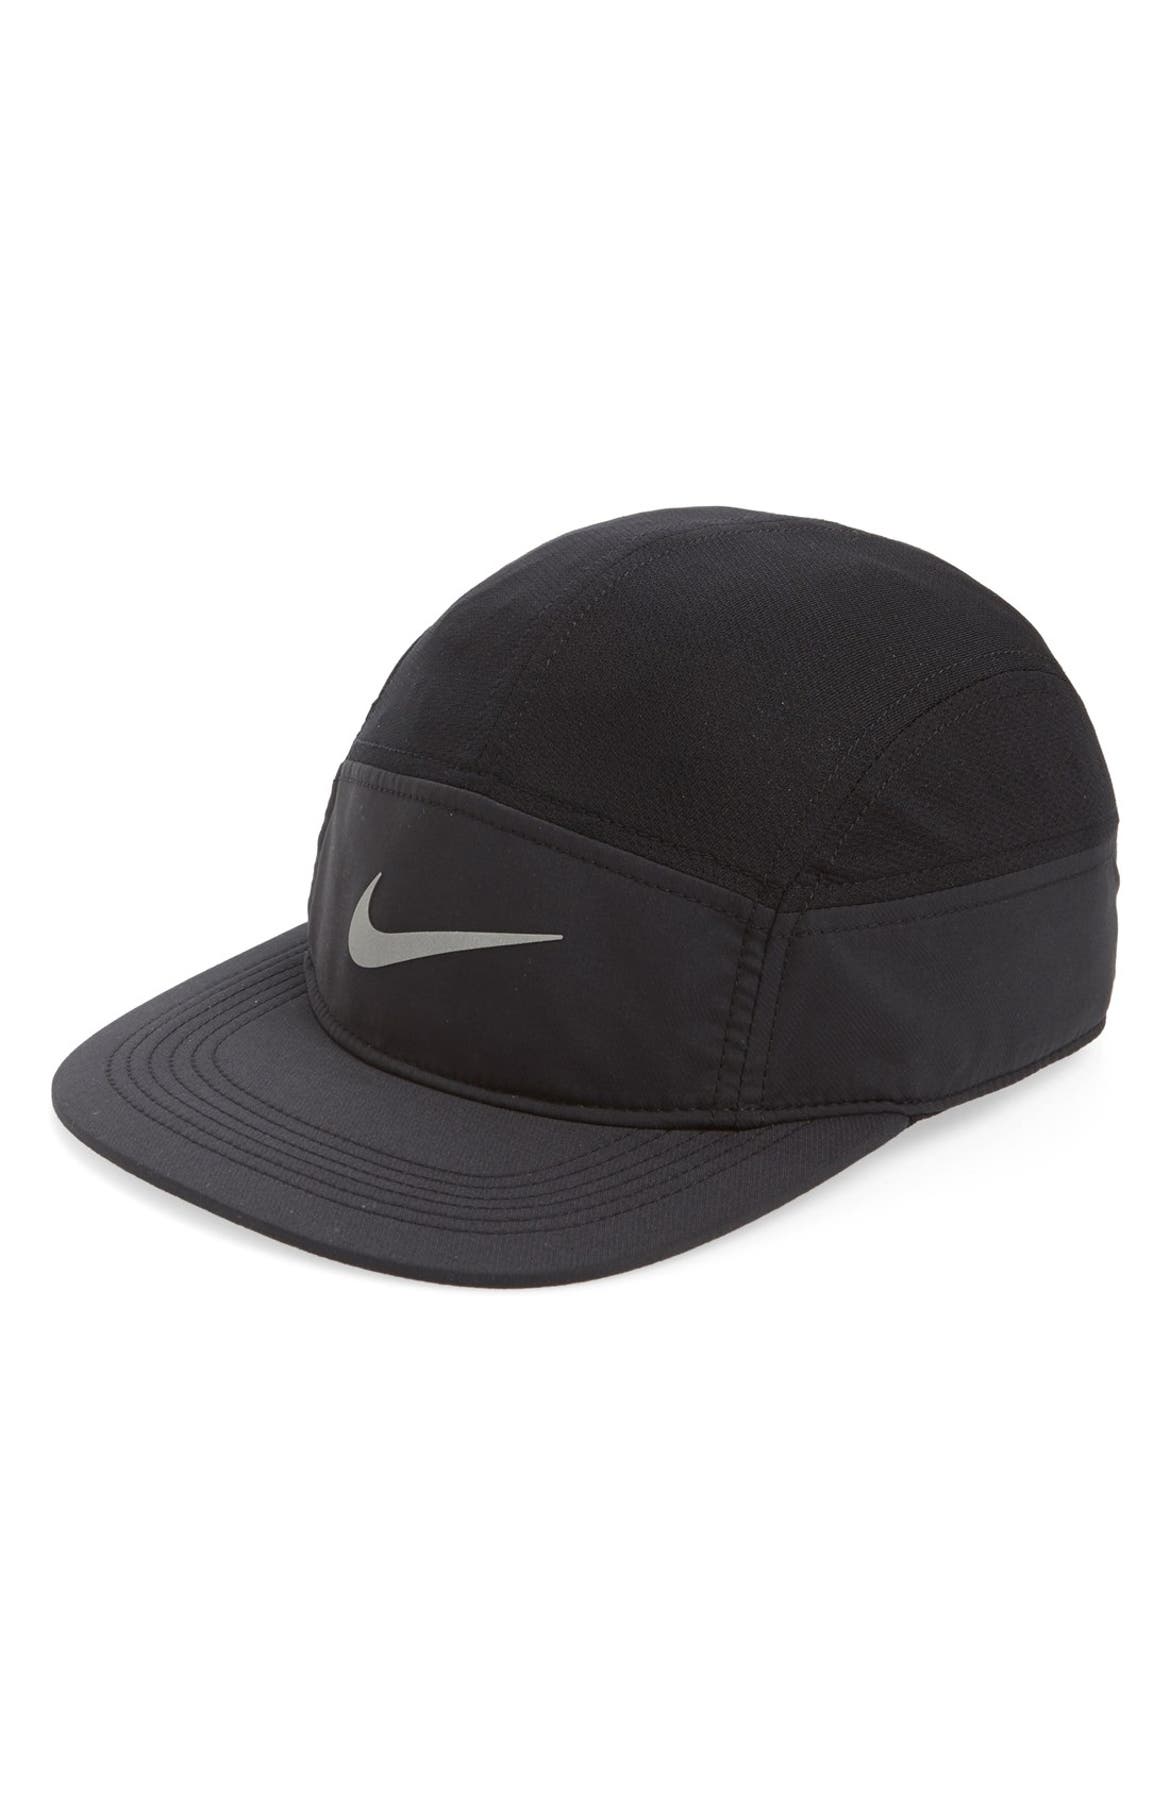 Nike 'AW84 Zip' Adjustable Running Cap | Nordstrom